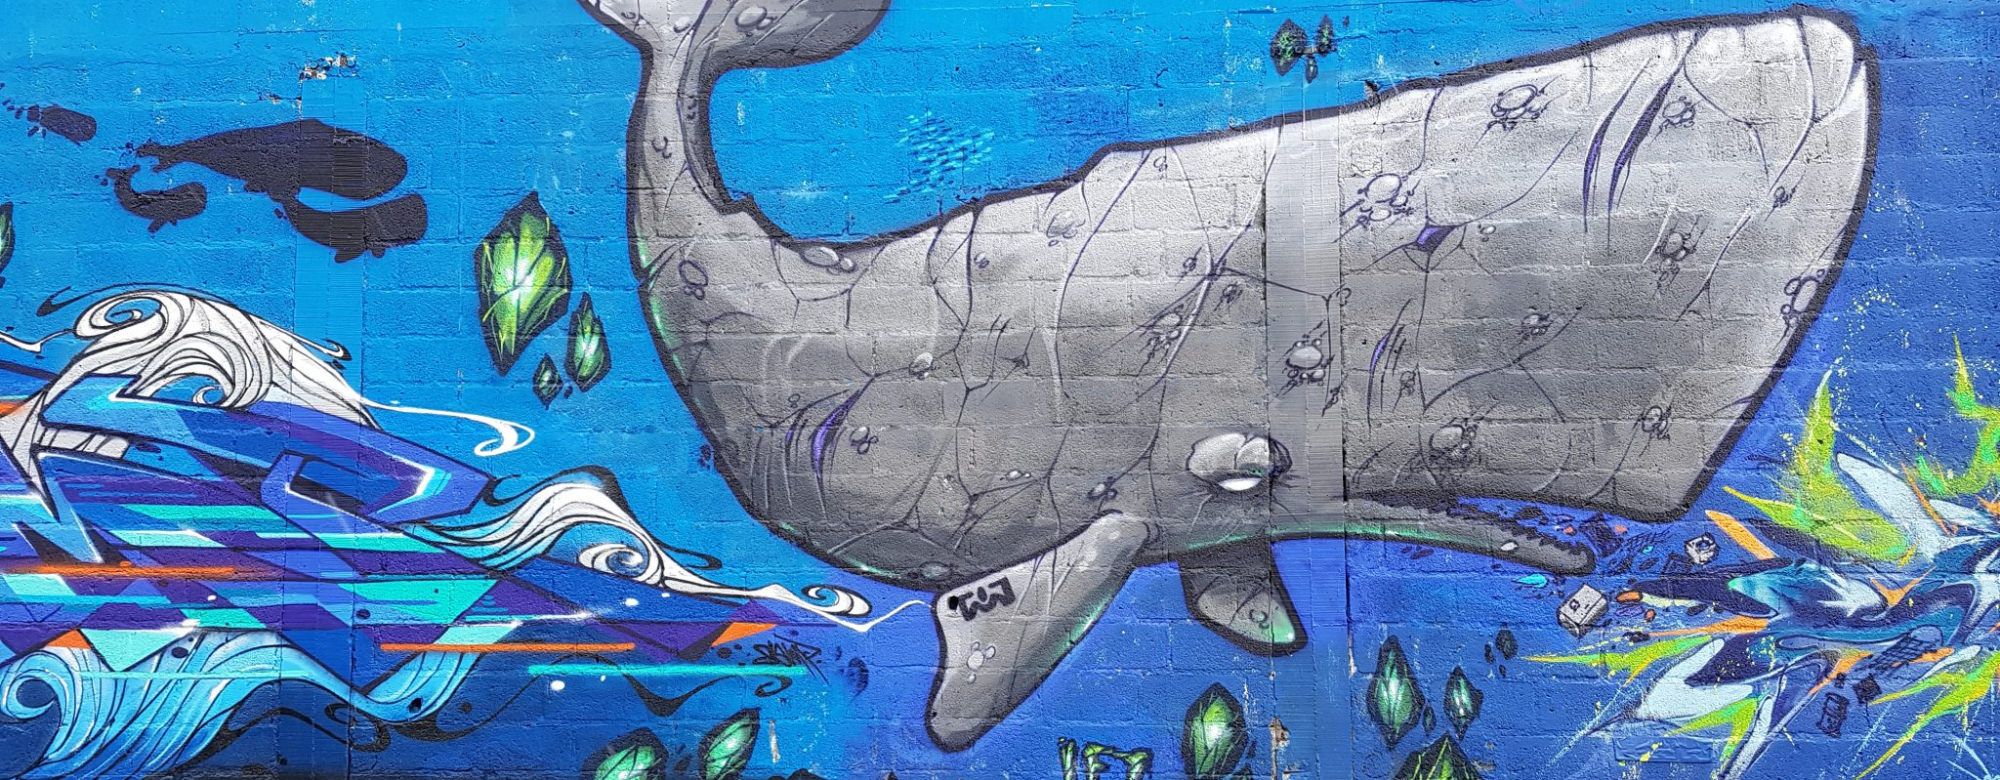 Graff d'un cachalot par LEZ et SAMP, extrait d'une fresque murale au Port de pêche de Lorient